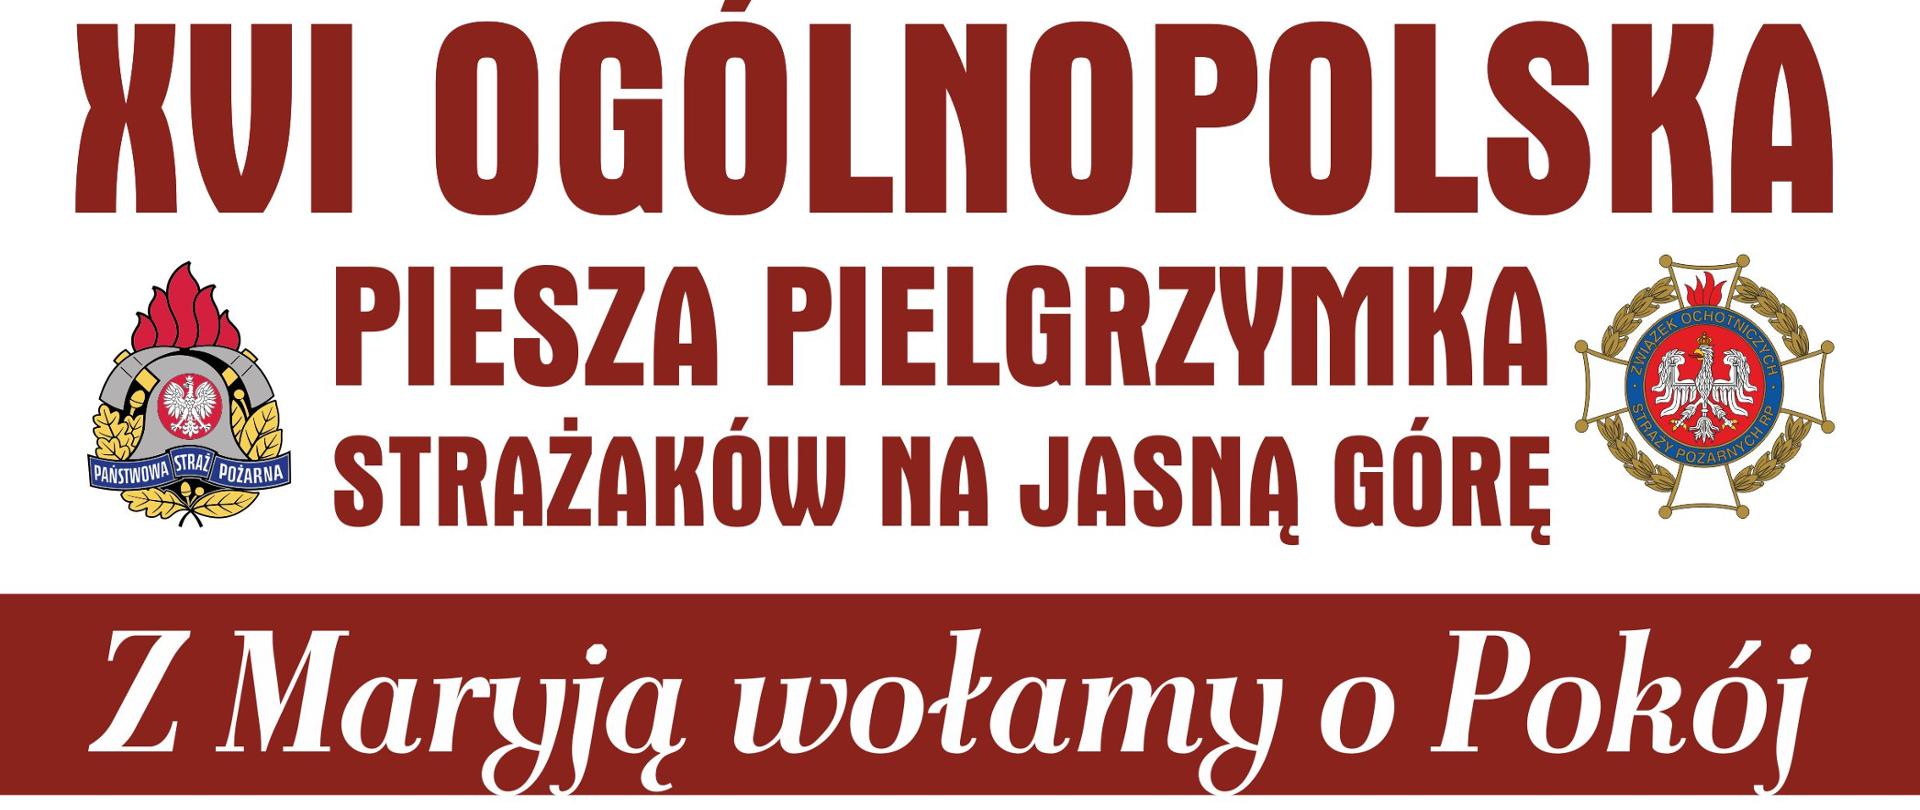 Plakat informujący o XVI Ogólnopolskiej Pielgrzymce Strażaków na Jasną Górę. "Z Maryją wołamy o Pokój". Termin 05-14 sierpnia. 